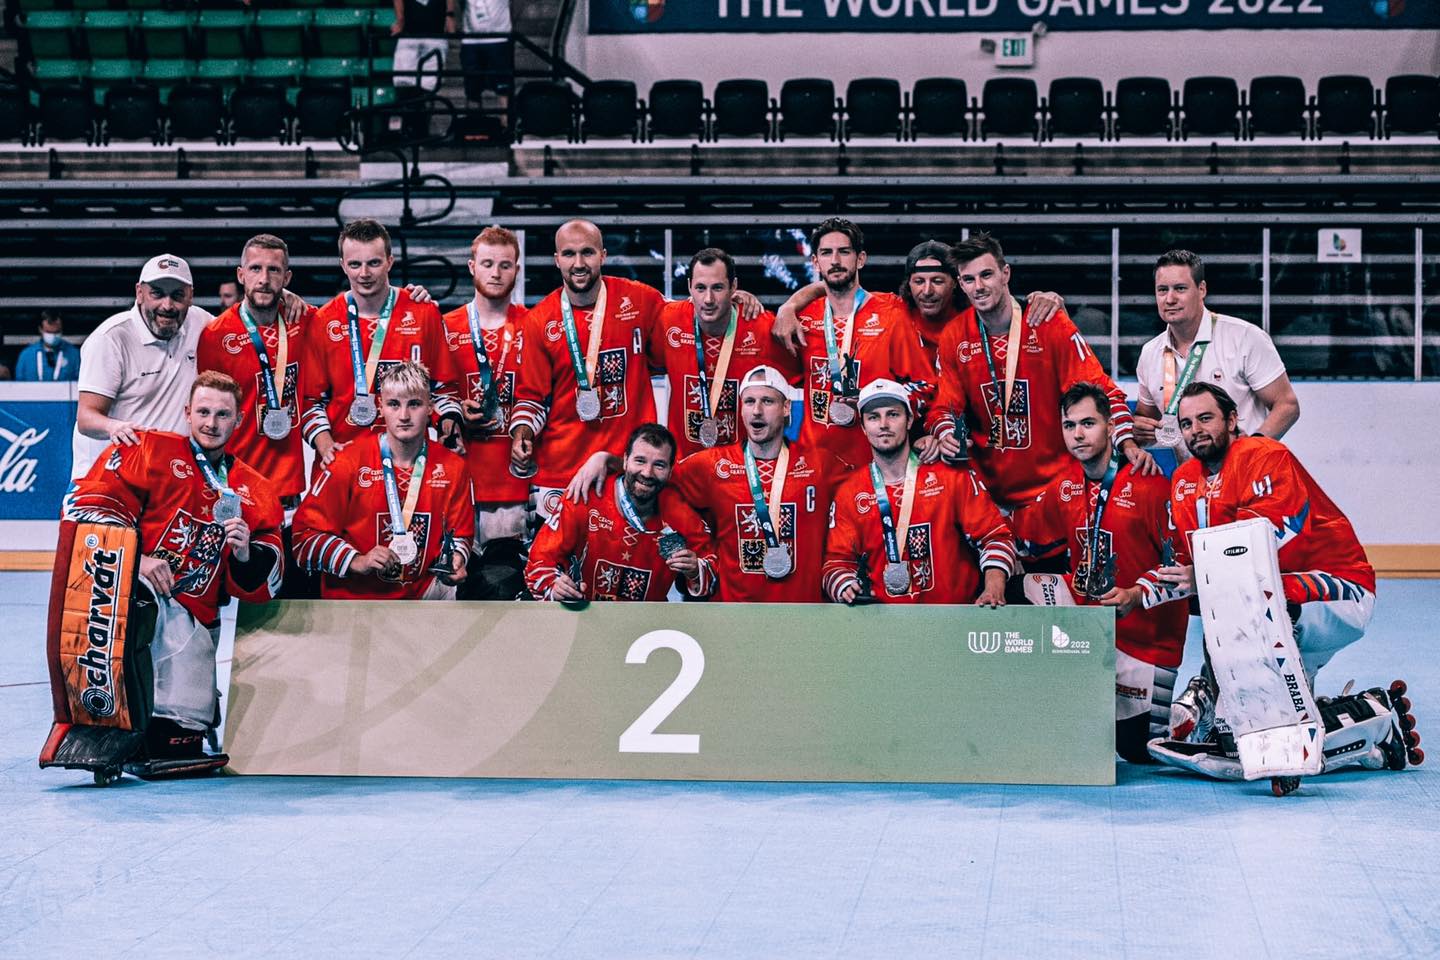 Čeští inline hokejisté získali stříbro na Světových hrách v Birminghamu – Brněnský deník